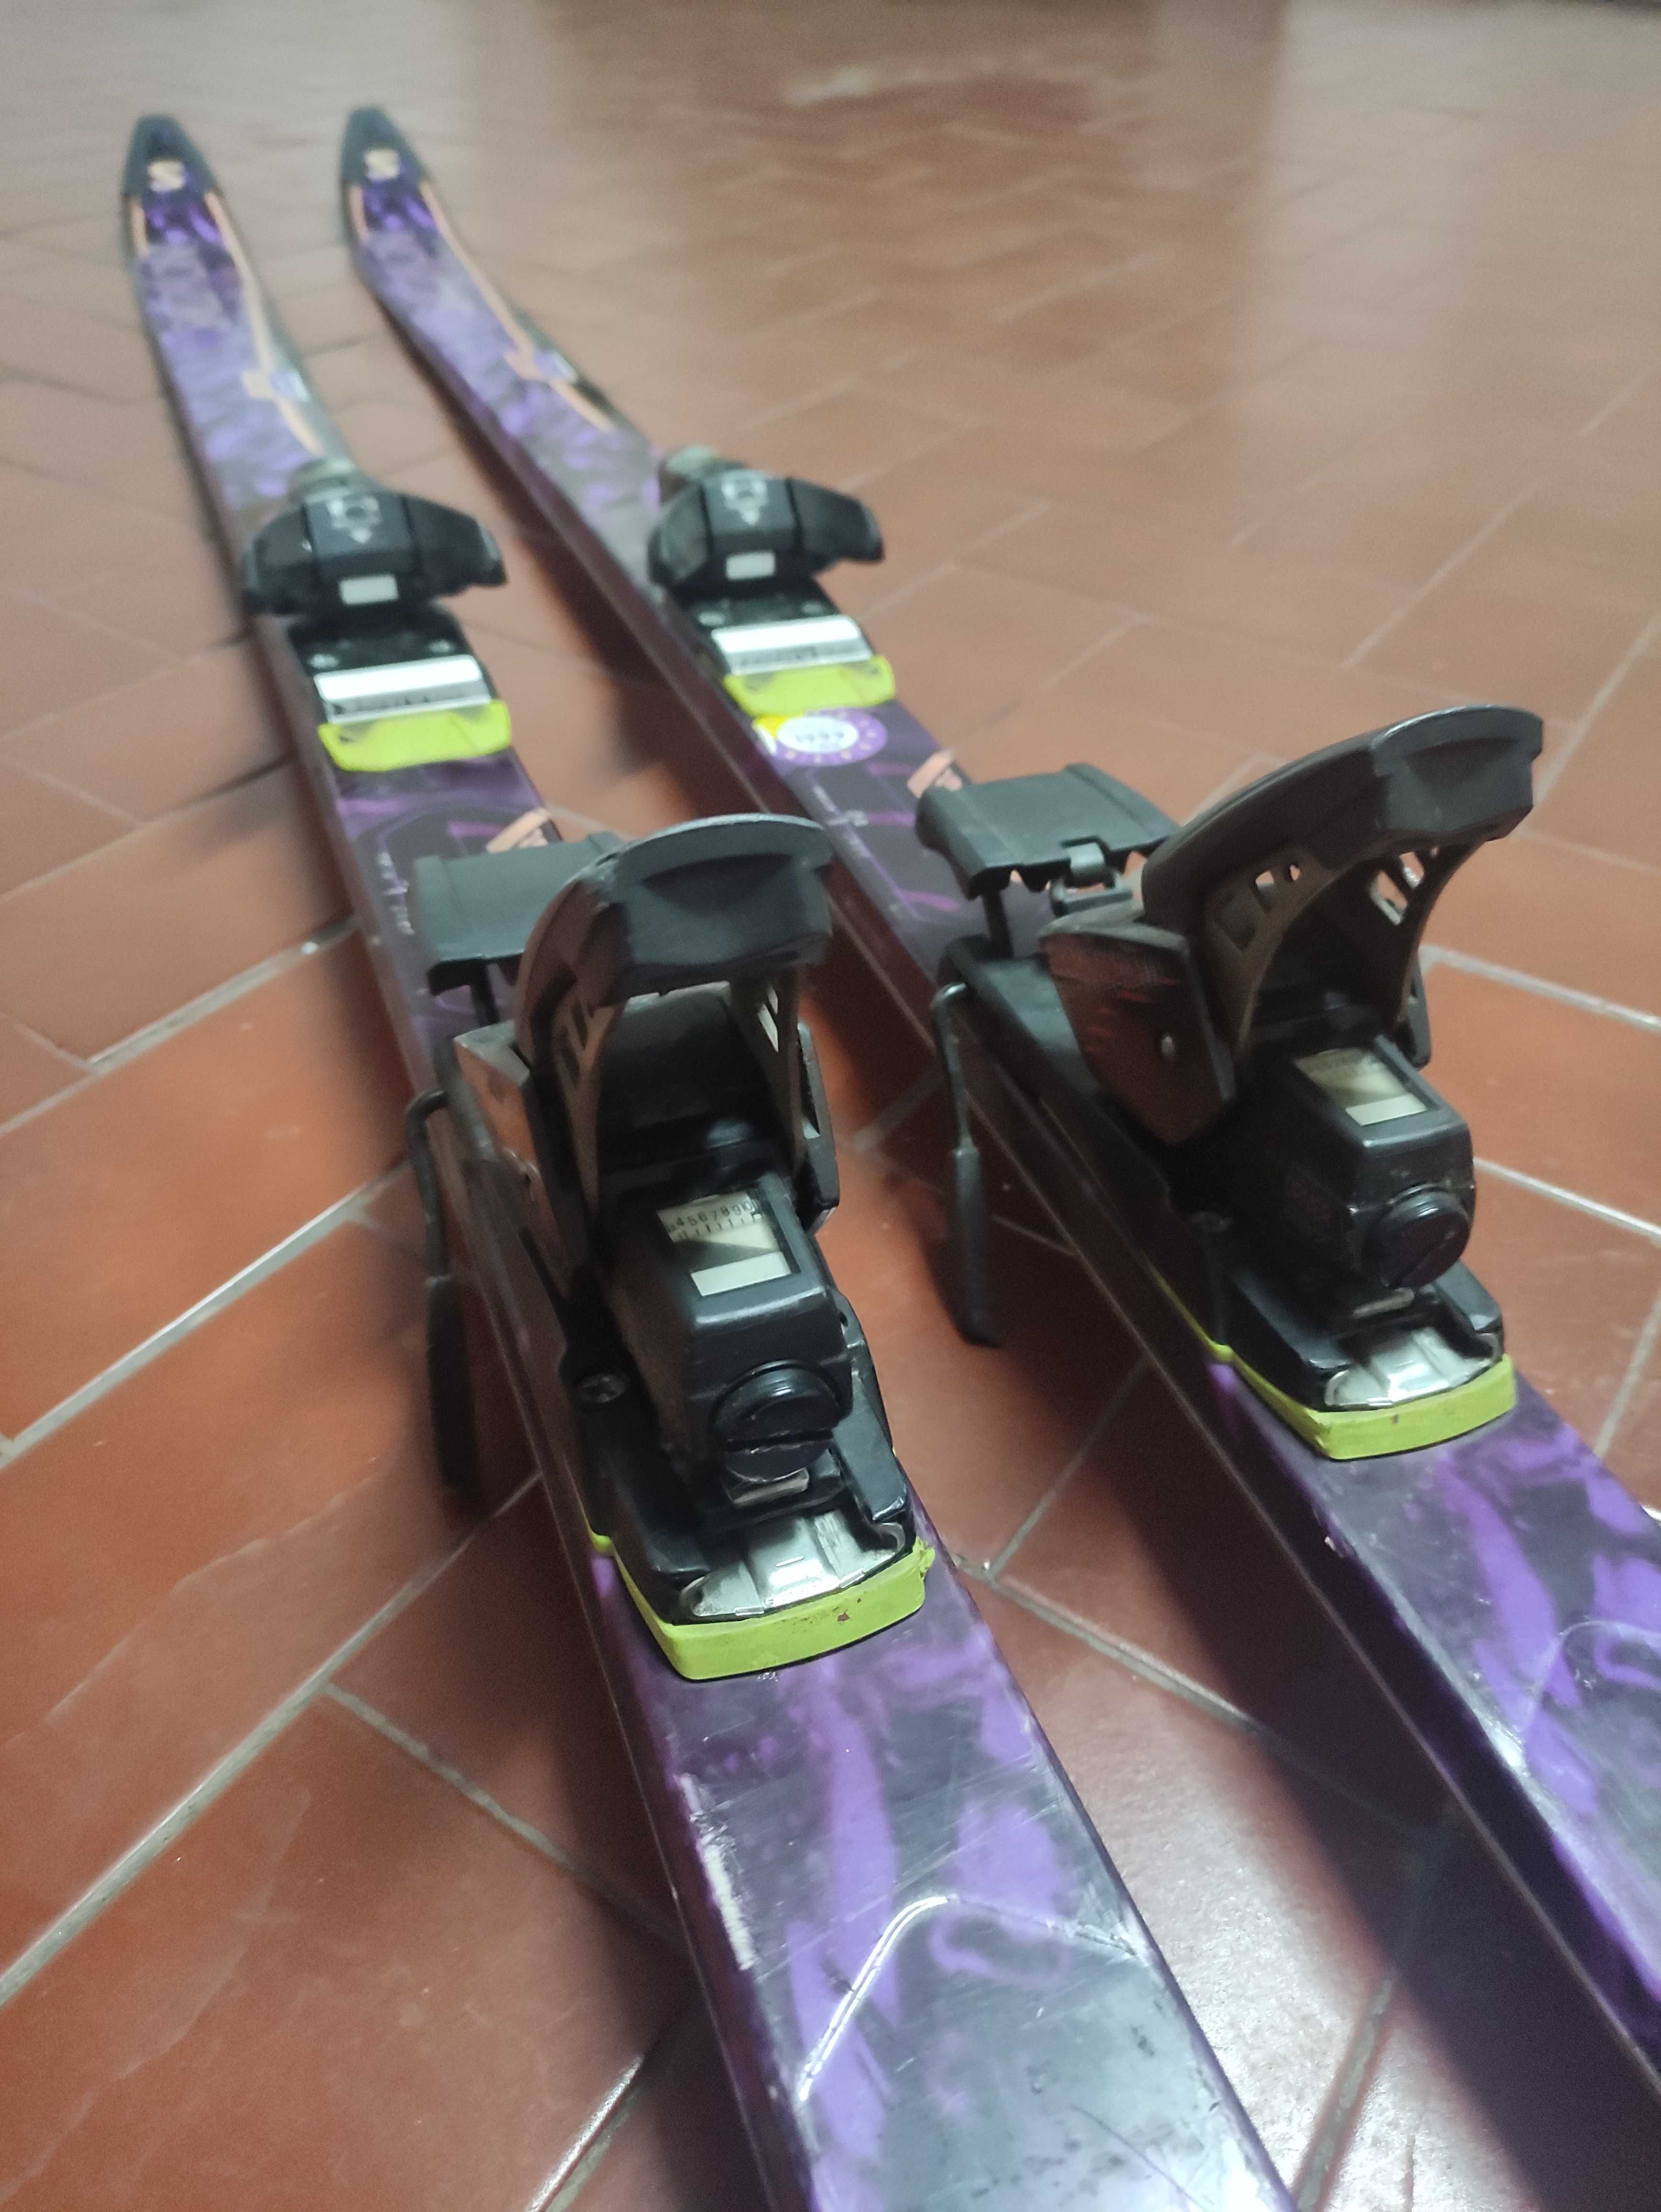 Skis e Botas usados em boas condições